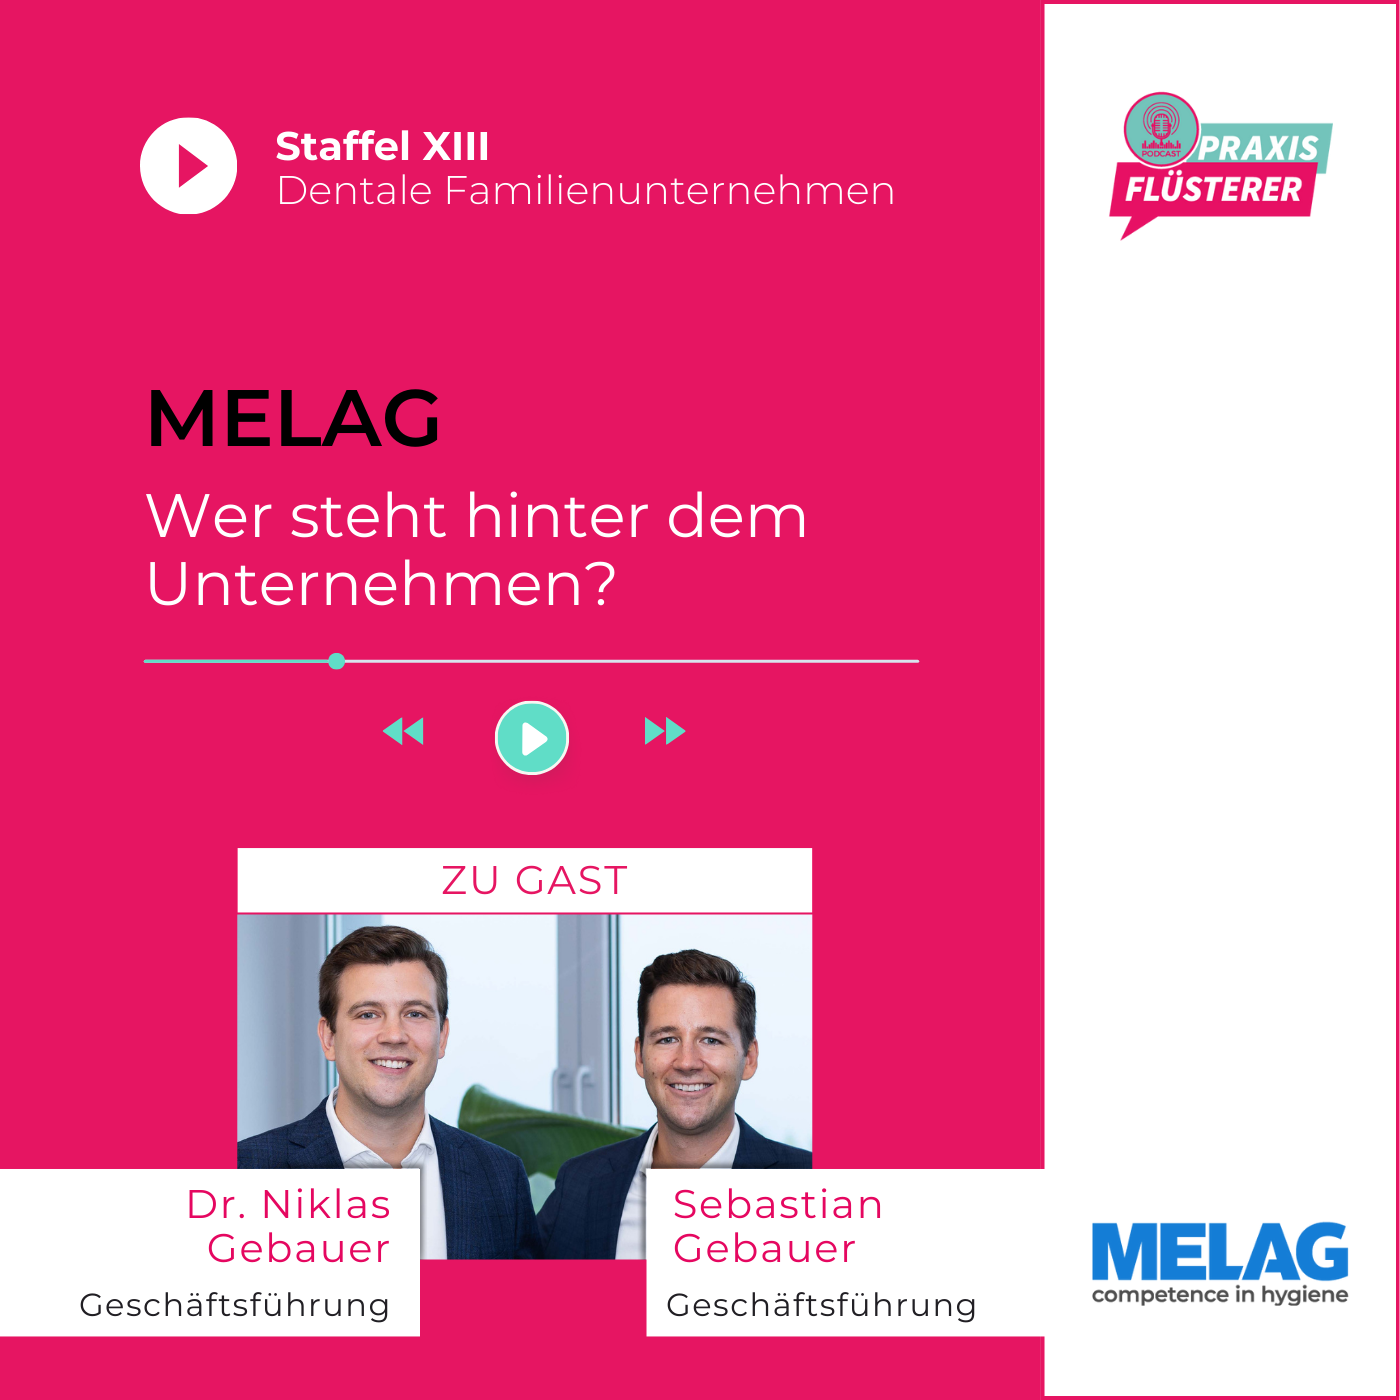 Die Erfolgsstory der Familie Gebauer und ihr Unternehmen MELAG: Ein Blick hinter die Kulissen